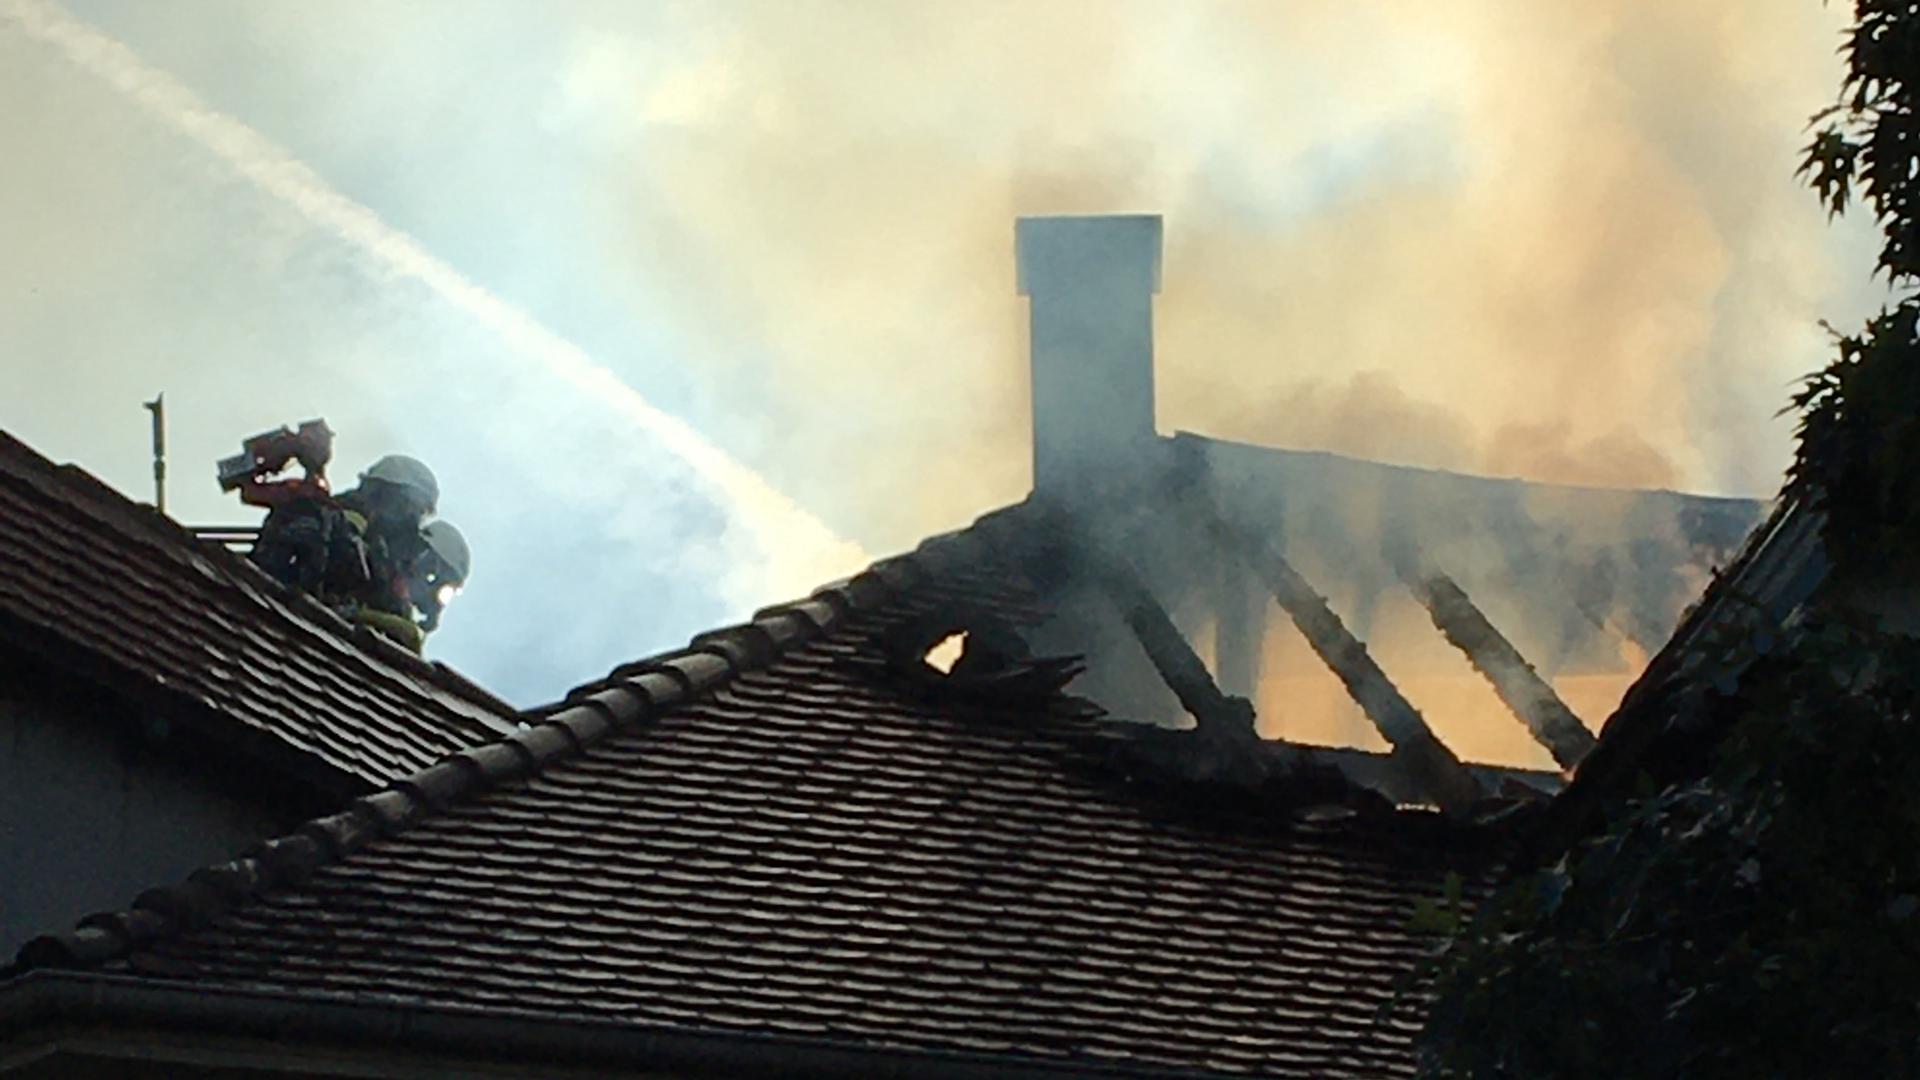 Der Dachstuhl in Rastatt scheint komplett ausgebrannt zu sein.